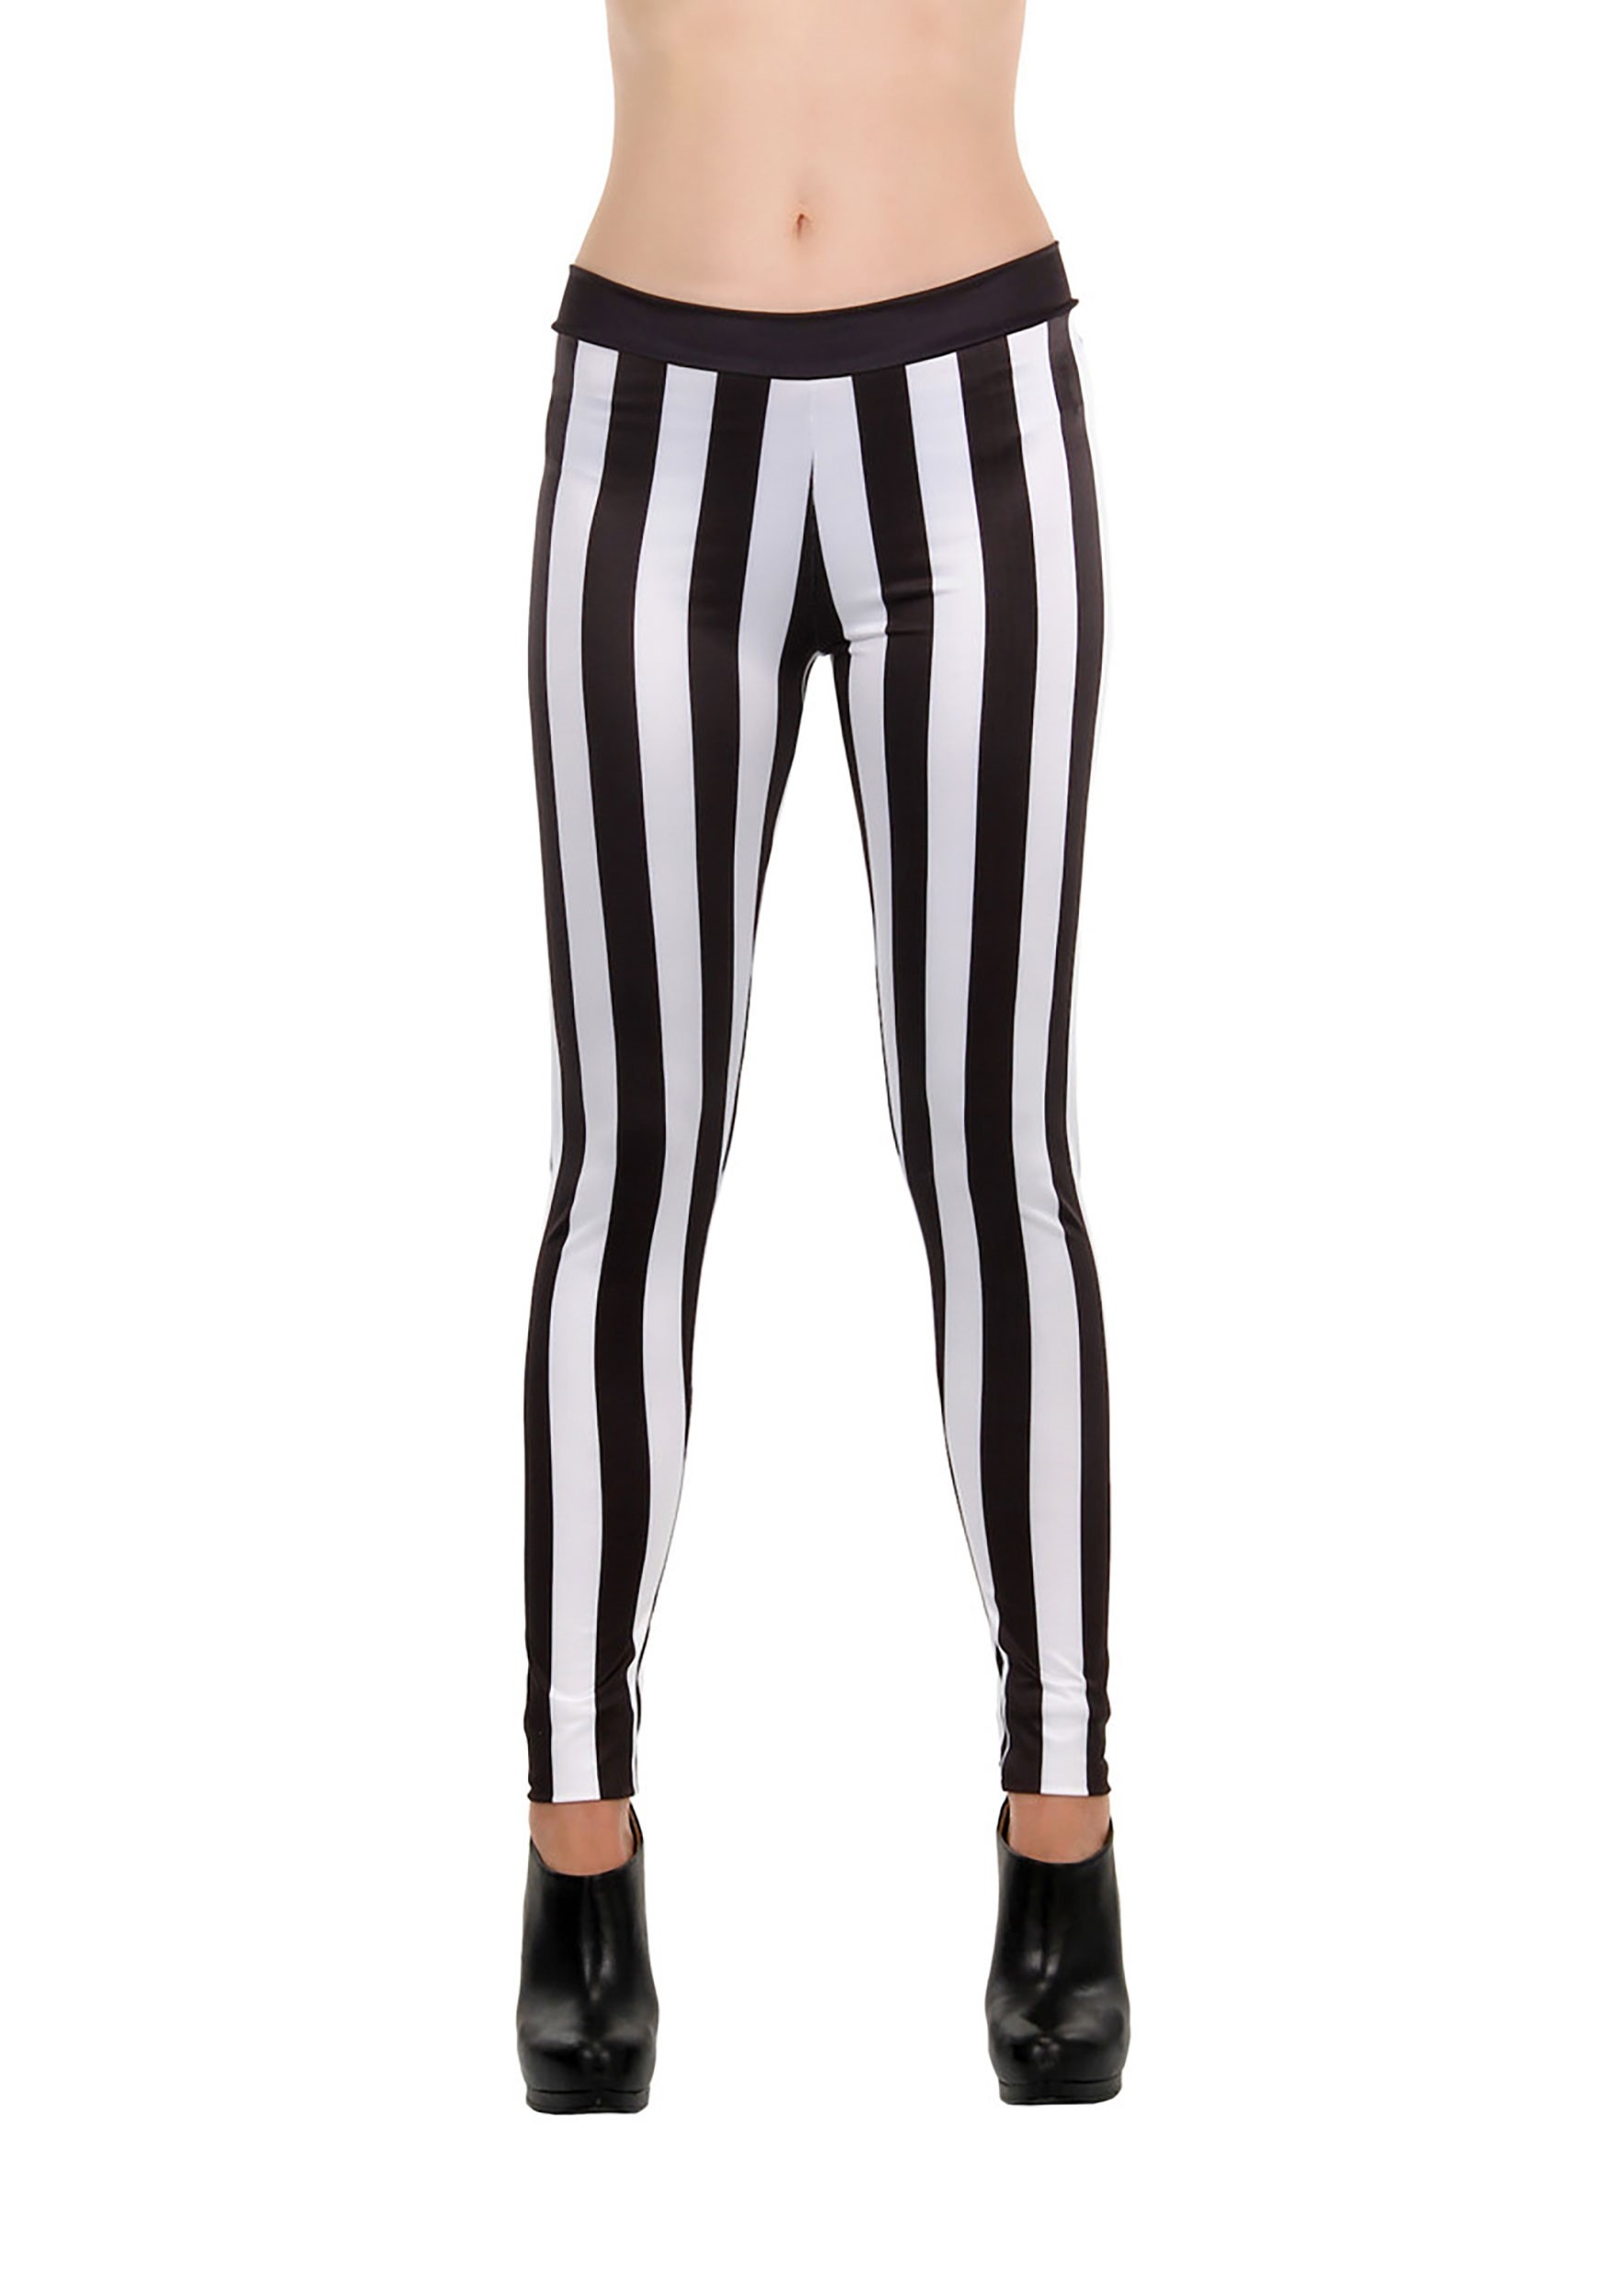 11 Lines Black and White RegiaArt - Leggings, polyester, spandex